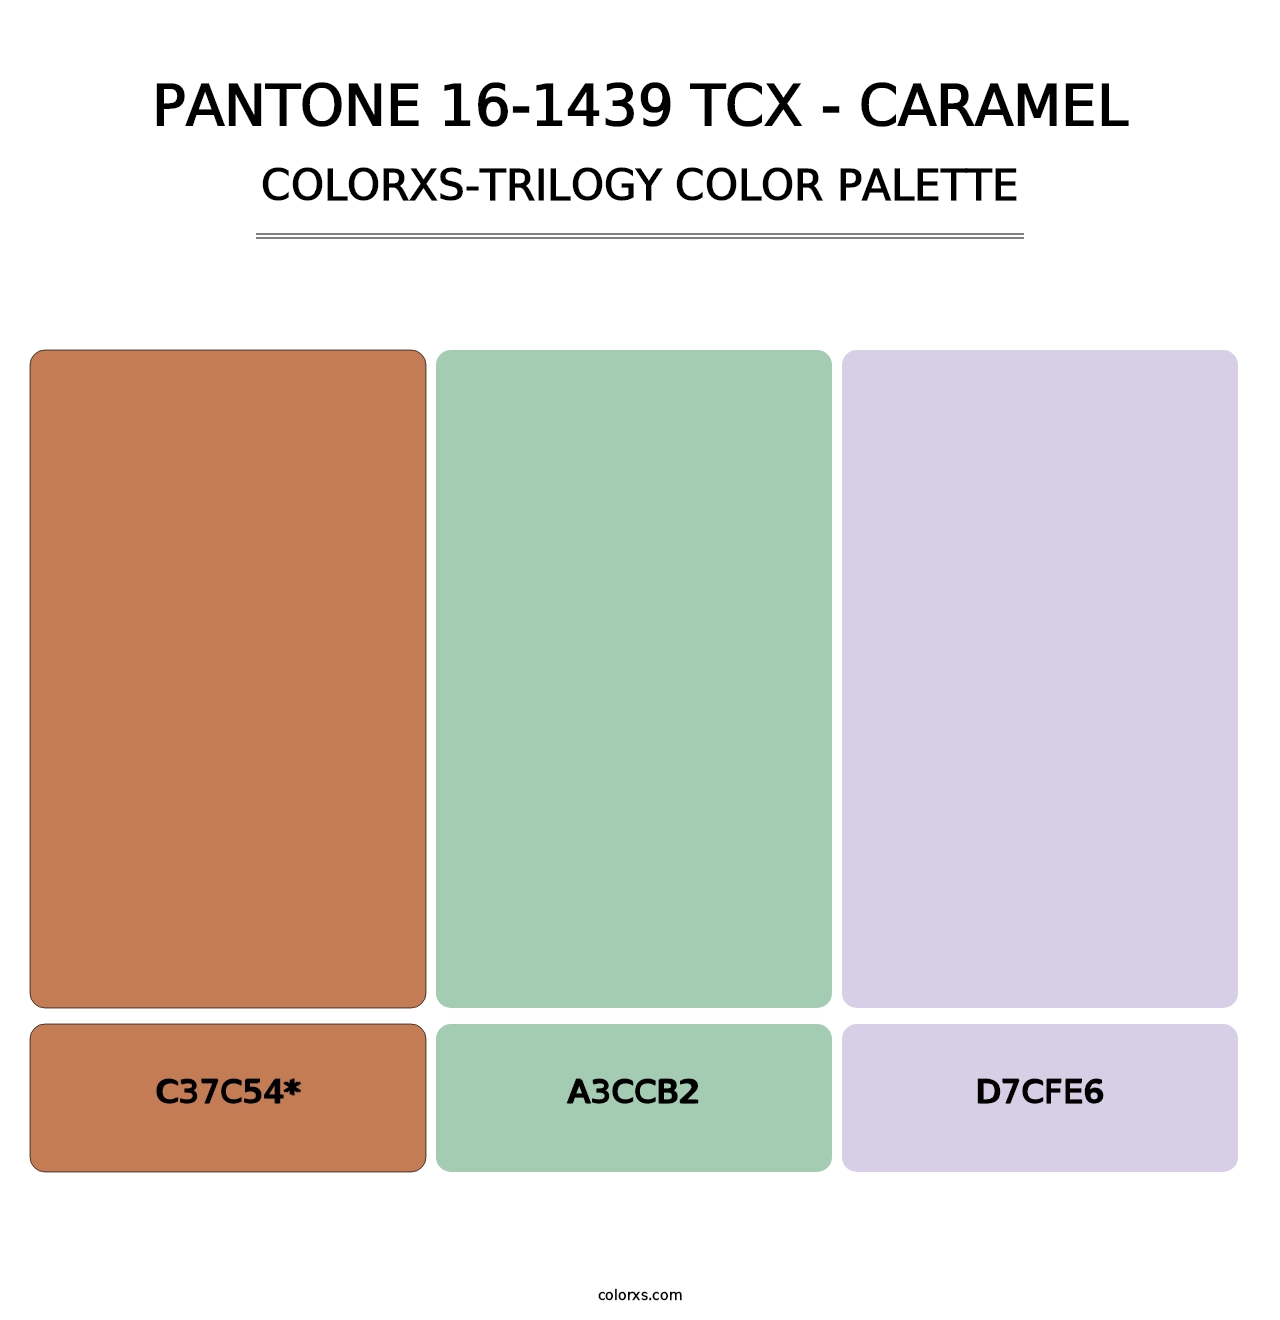 PANTONE 16-1439 TCX - Caramel - Colorxs Trilogy Palette